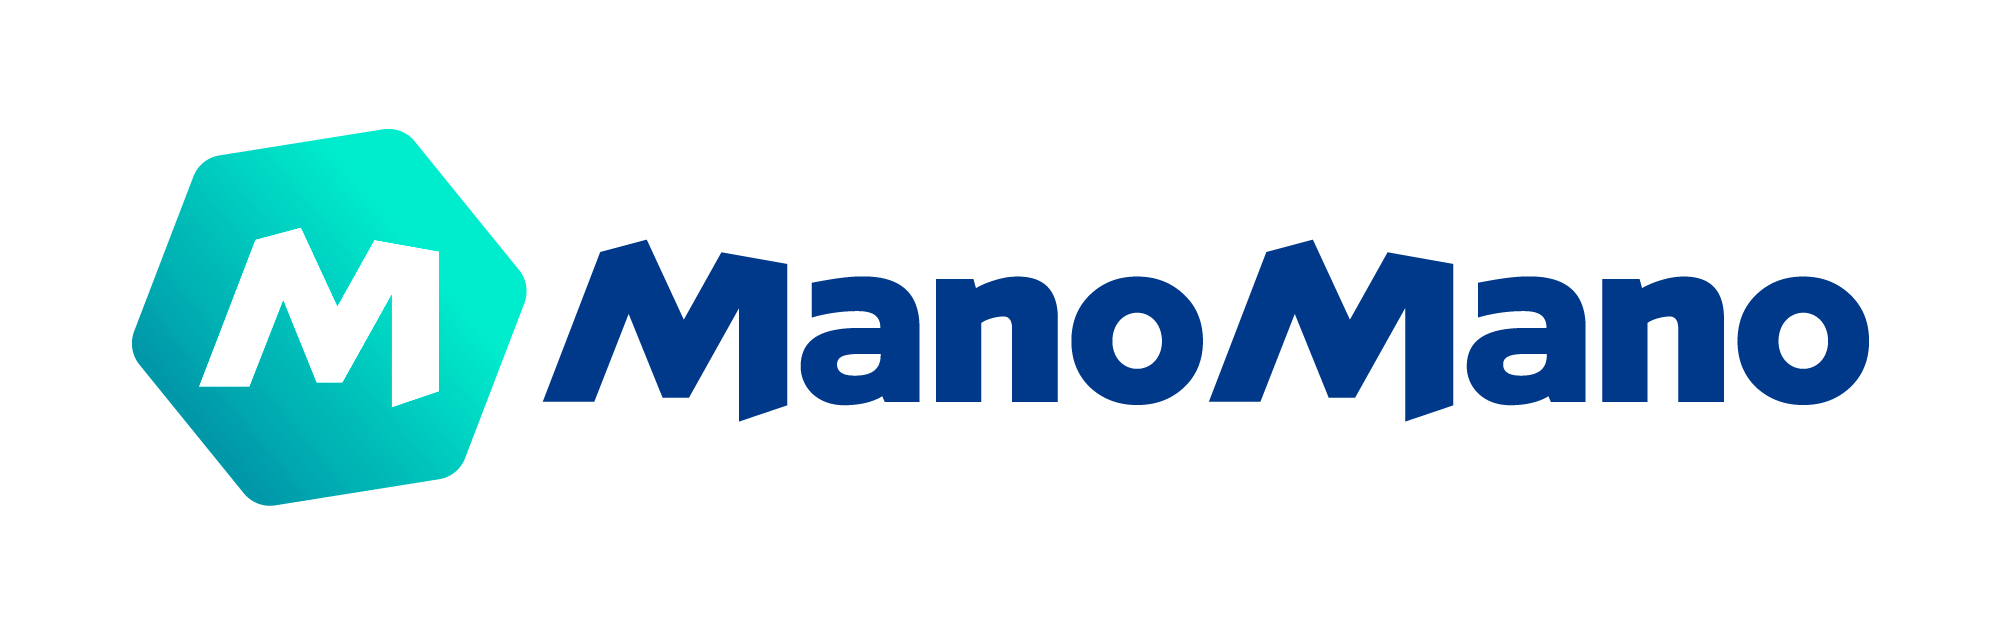 ManoMano_2018-1-1.png